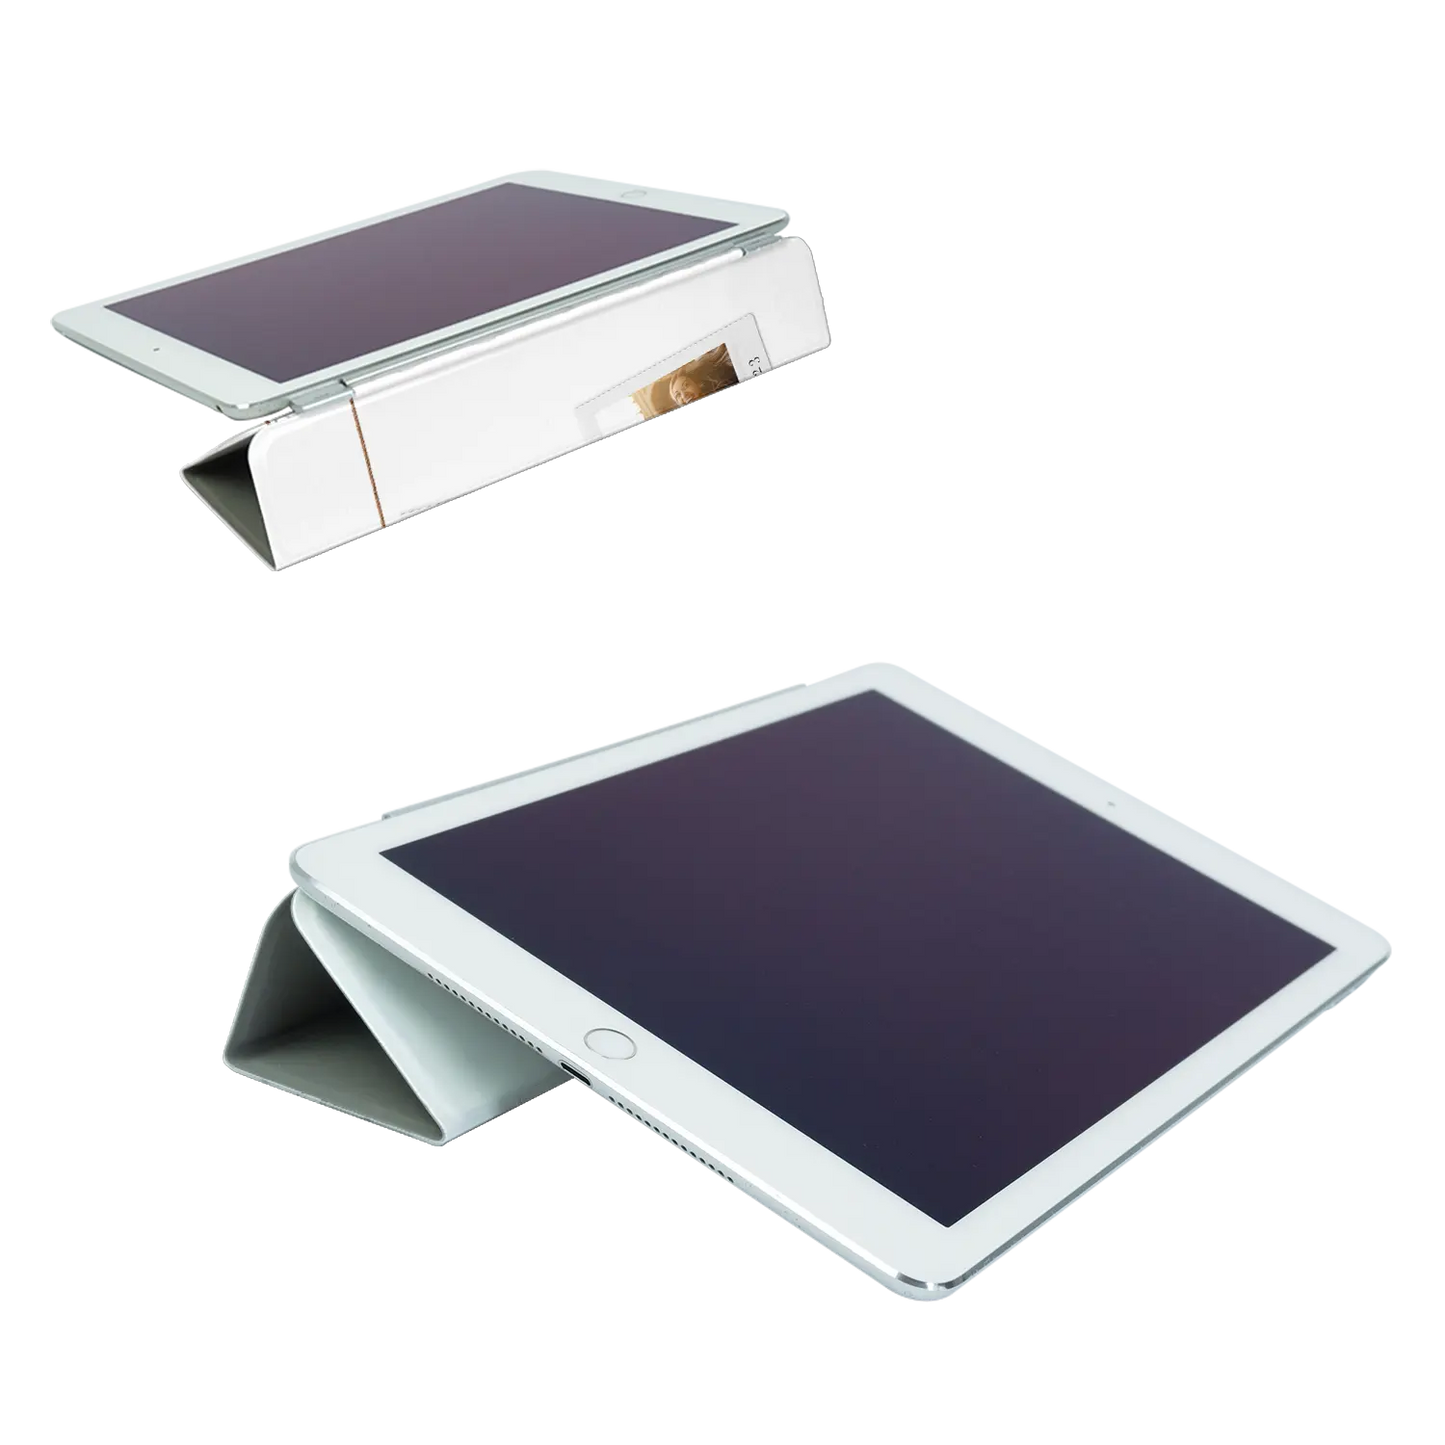 Polaroid Duo - Coque iPad personnalisée